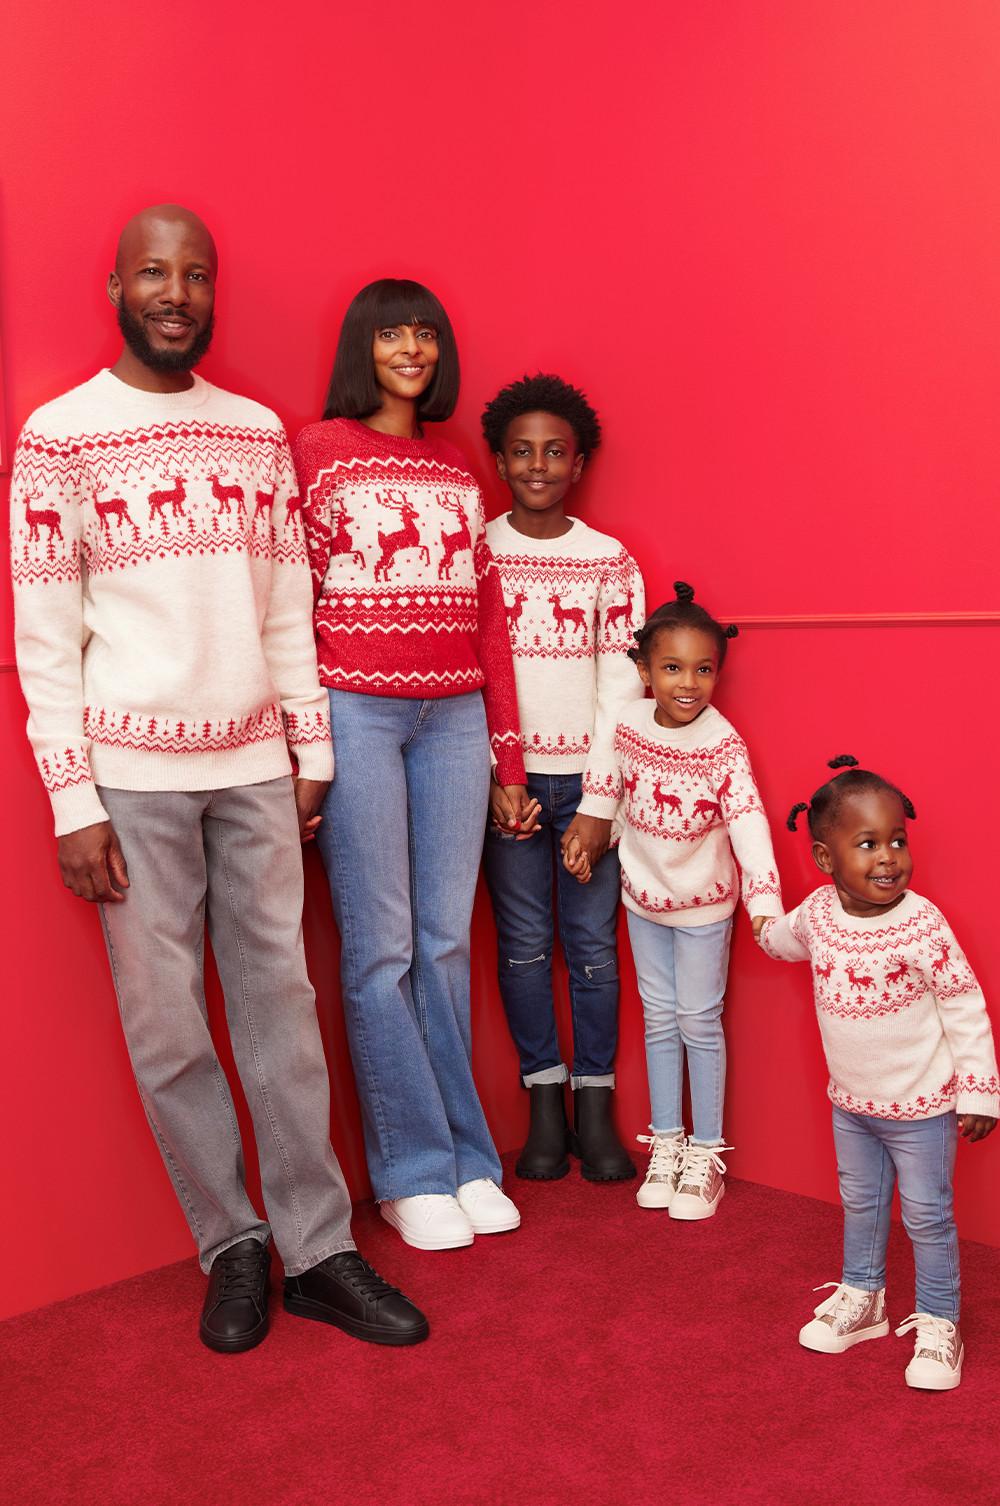 Družina v ujemajočih se božičnih pižamah